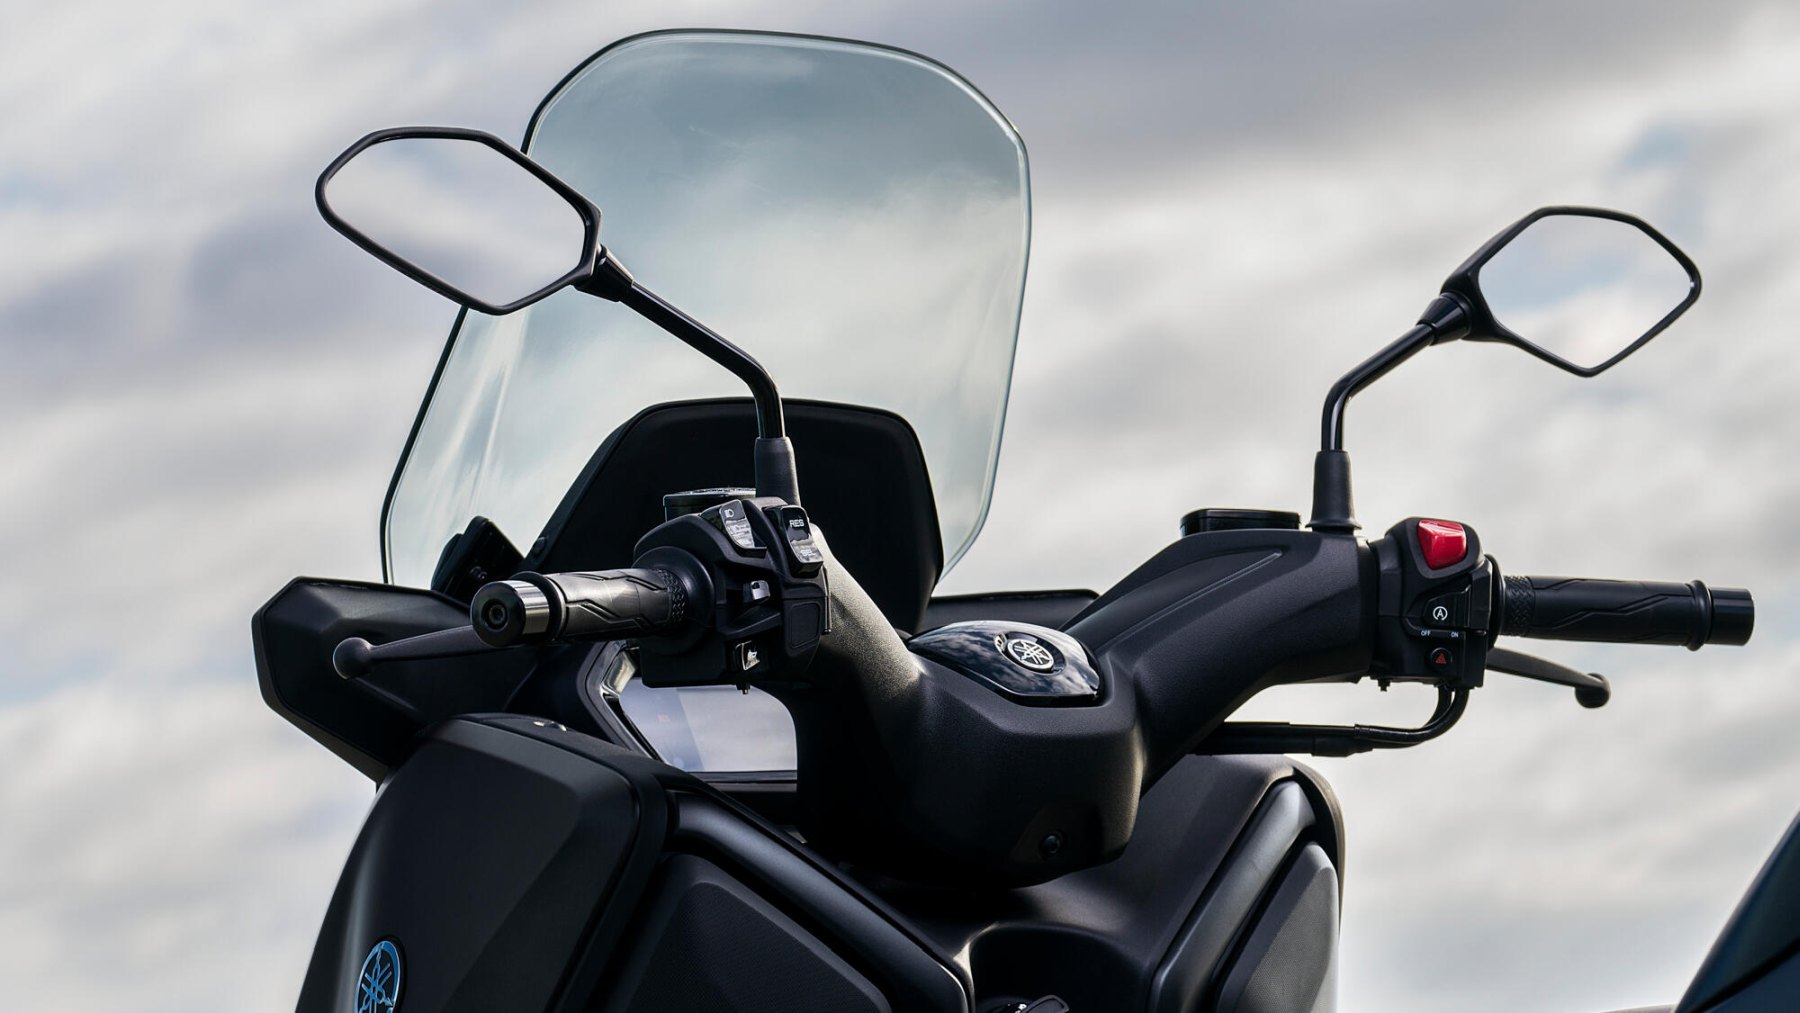 Vista del manillar de la Yamaha X-Max 125cc destacando ergonomía y acabados.